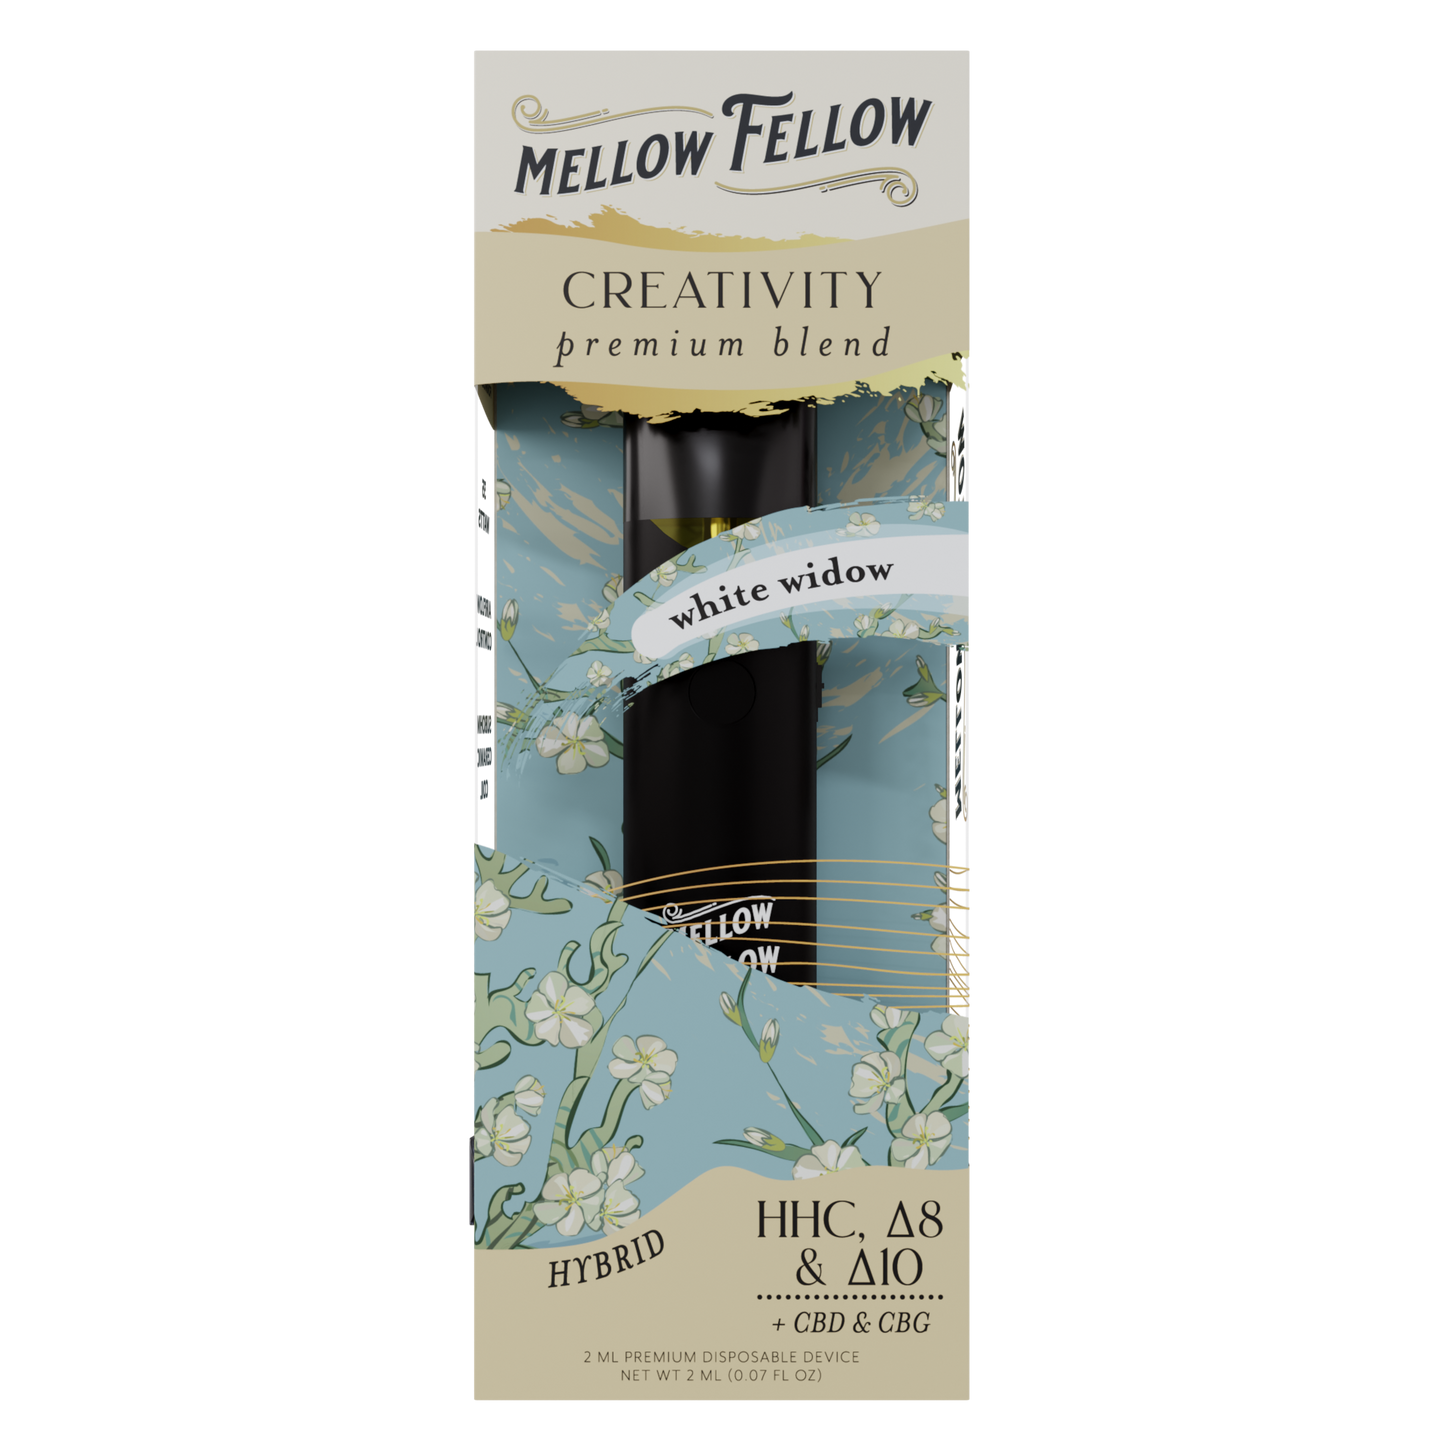 Mellow Fellow Creativity Blend 2ml Disposable Vape White Widow Best Sales Price - Vape Pens